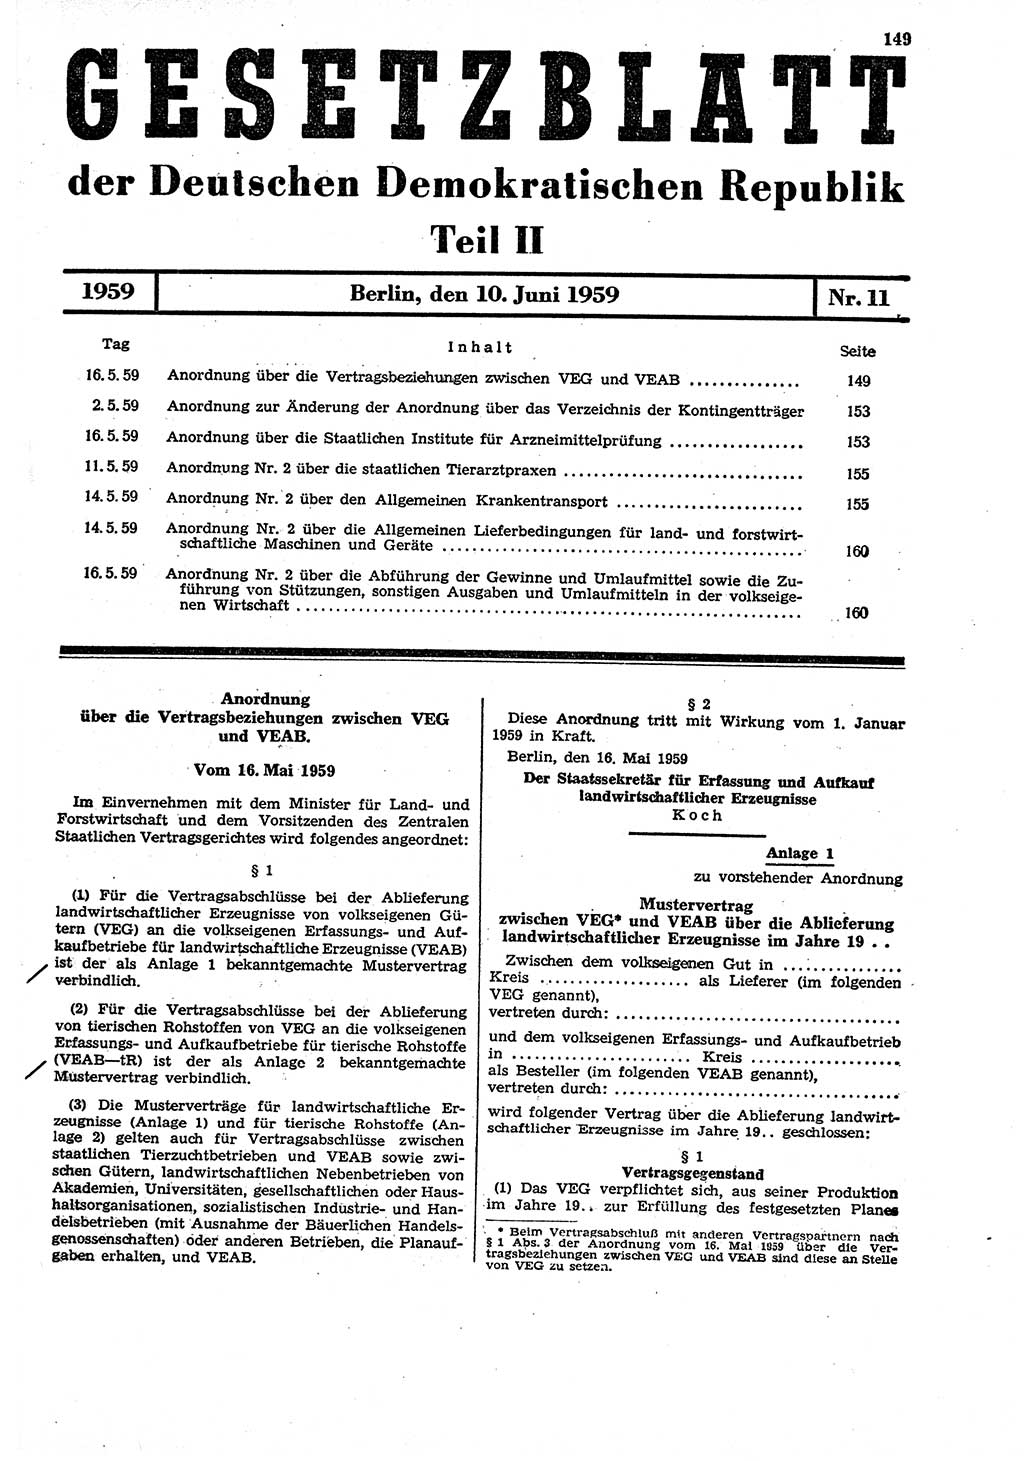 Gesetzblatt (GBl.) der Deutschen Demokratischen Republik (DDR) Teil ⅠⅠ 1959, Seite 149 (GBl. DDR ⅠⅠ 1959, S. 149)